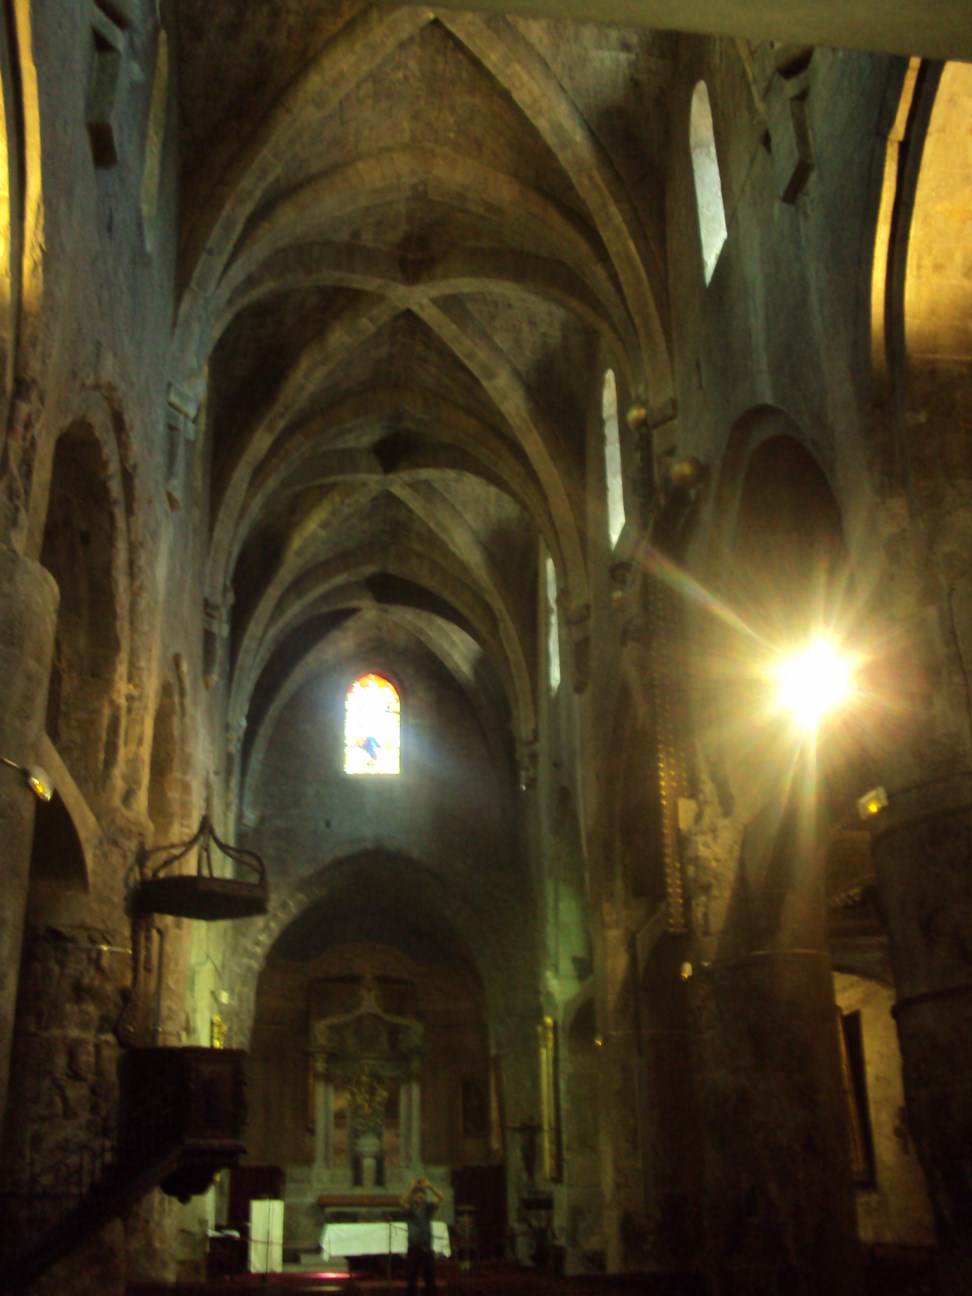 Interiorul catedralei